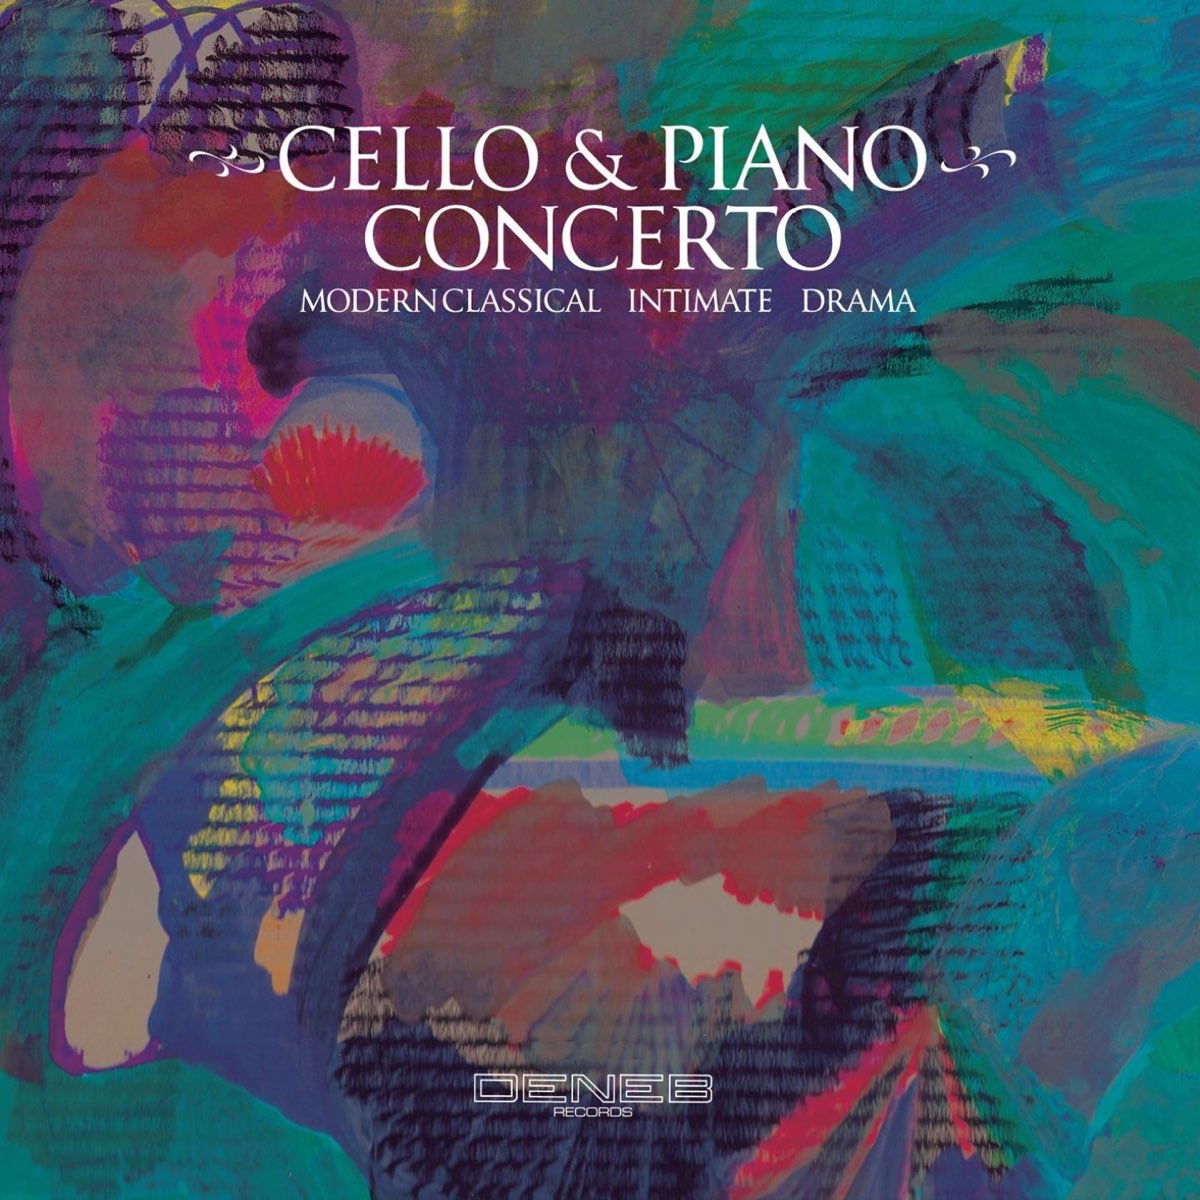 Cello & Piano Concerto by Gilda Buttà & Luca Pincini on Apple Music